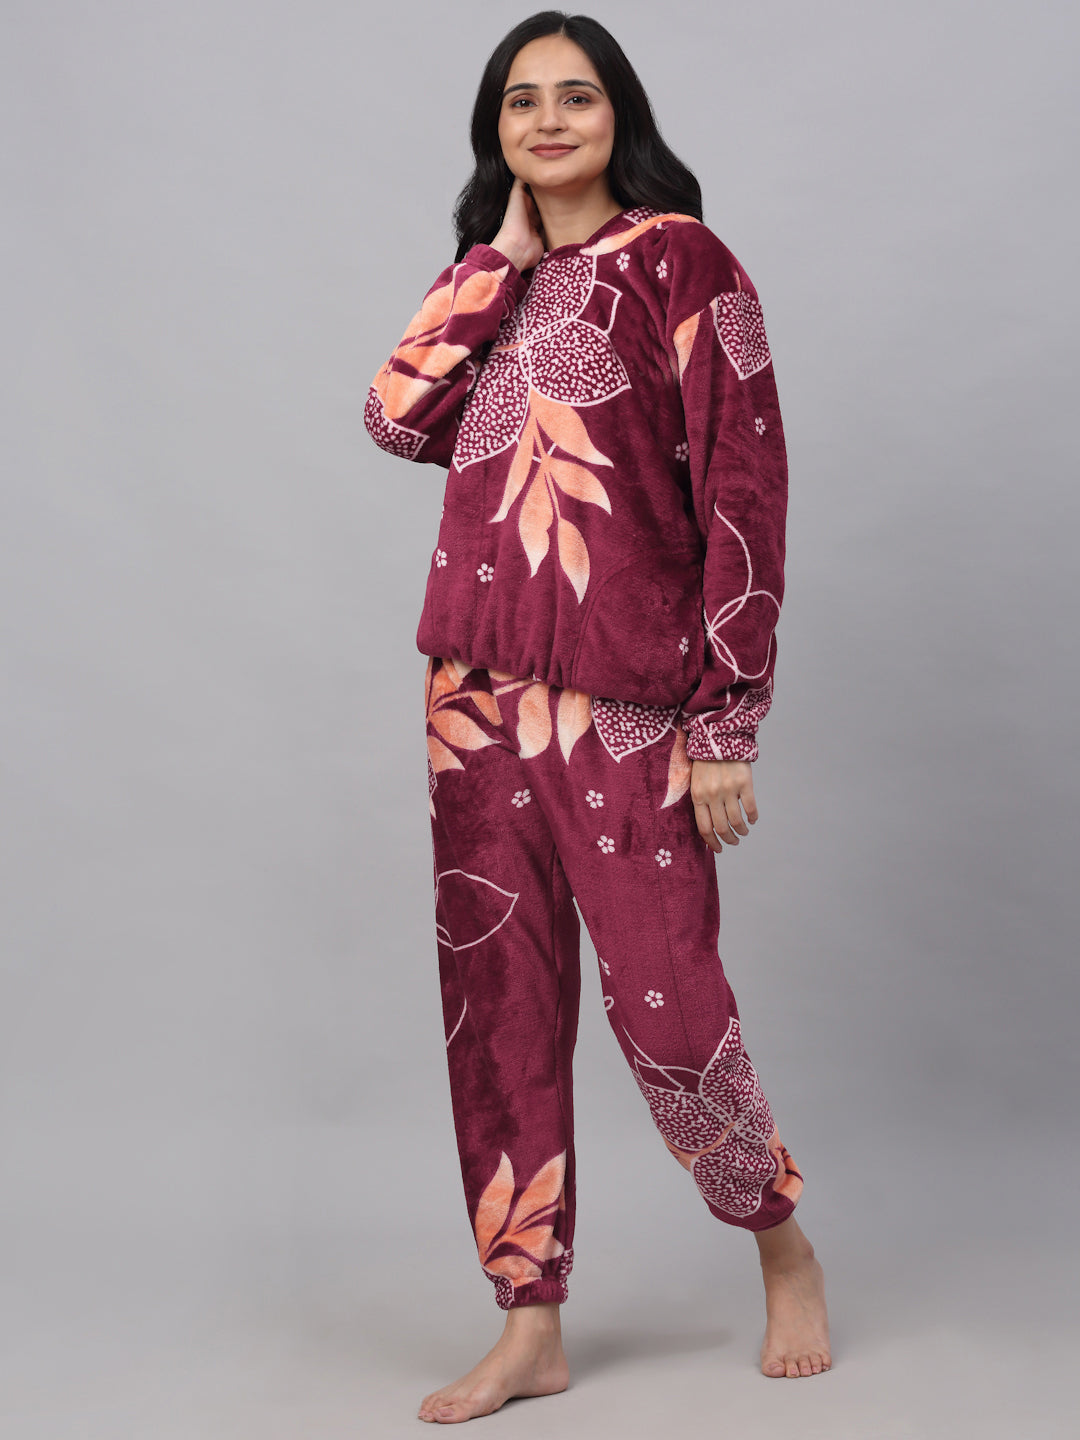 Klotthe Women MultiColor Printed Wool Blend Hooded Night Suit